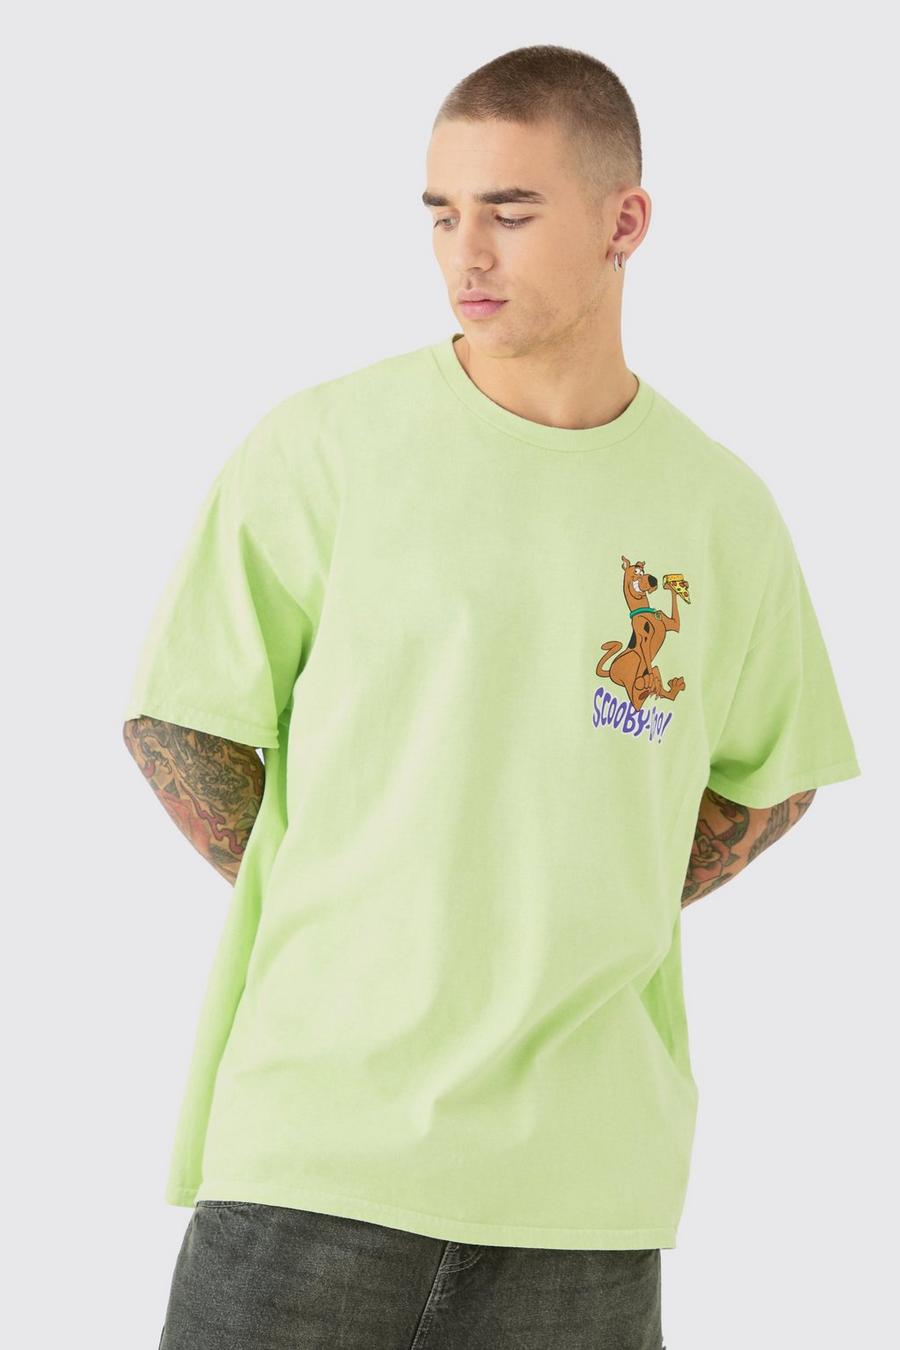 T-shirt oversize délavé à imprimé Scooby Doo, Green